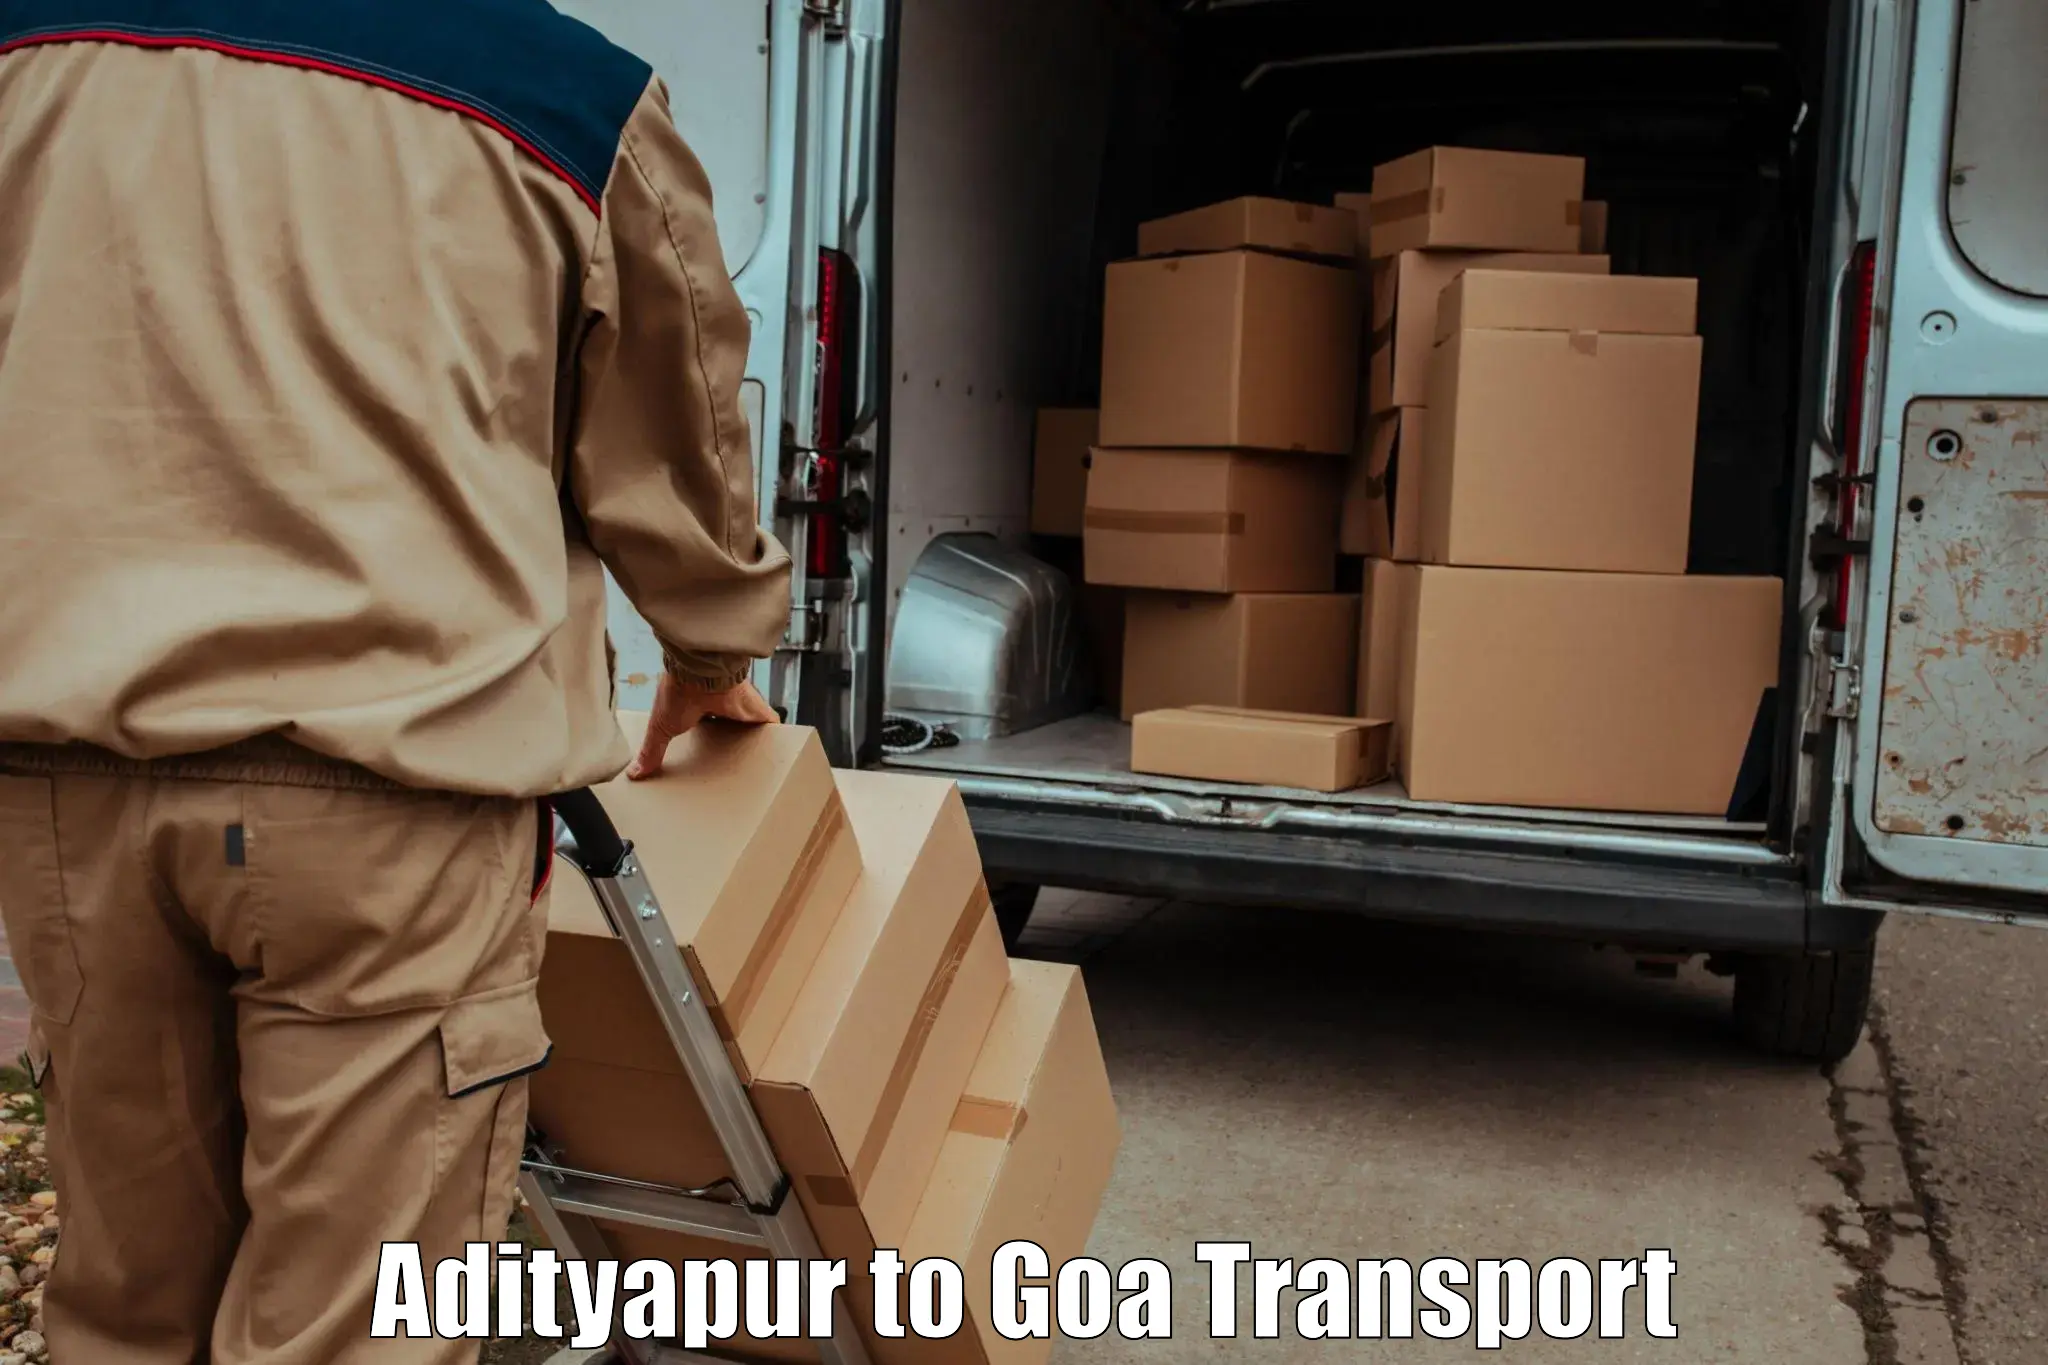 Daily transport service Adityapur to Canacona